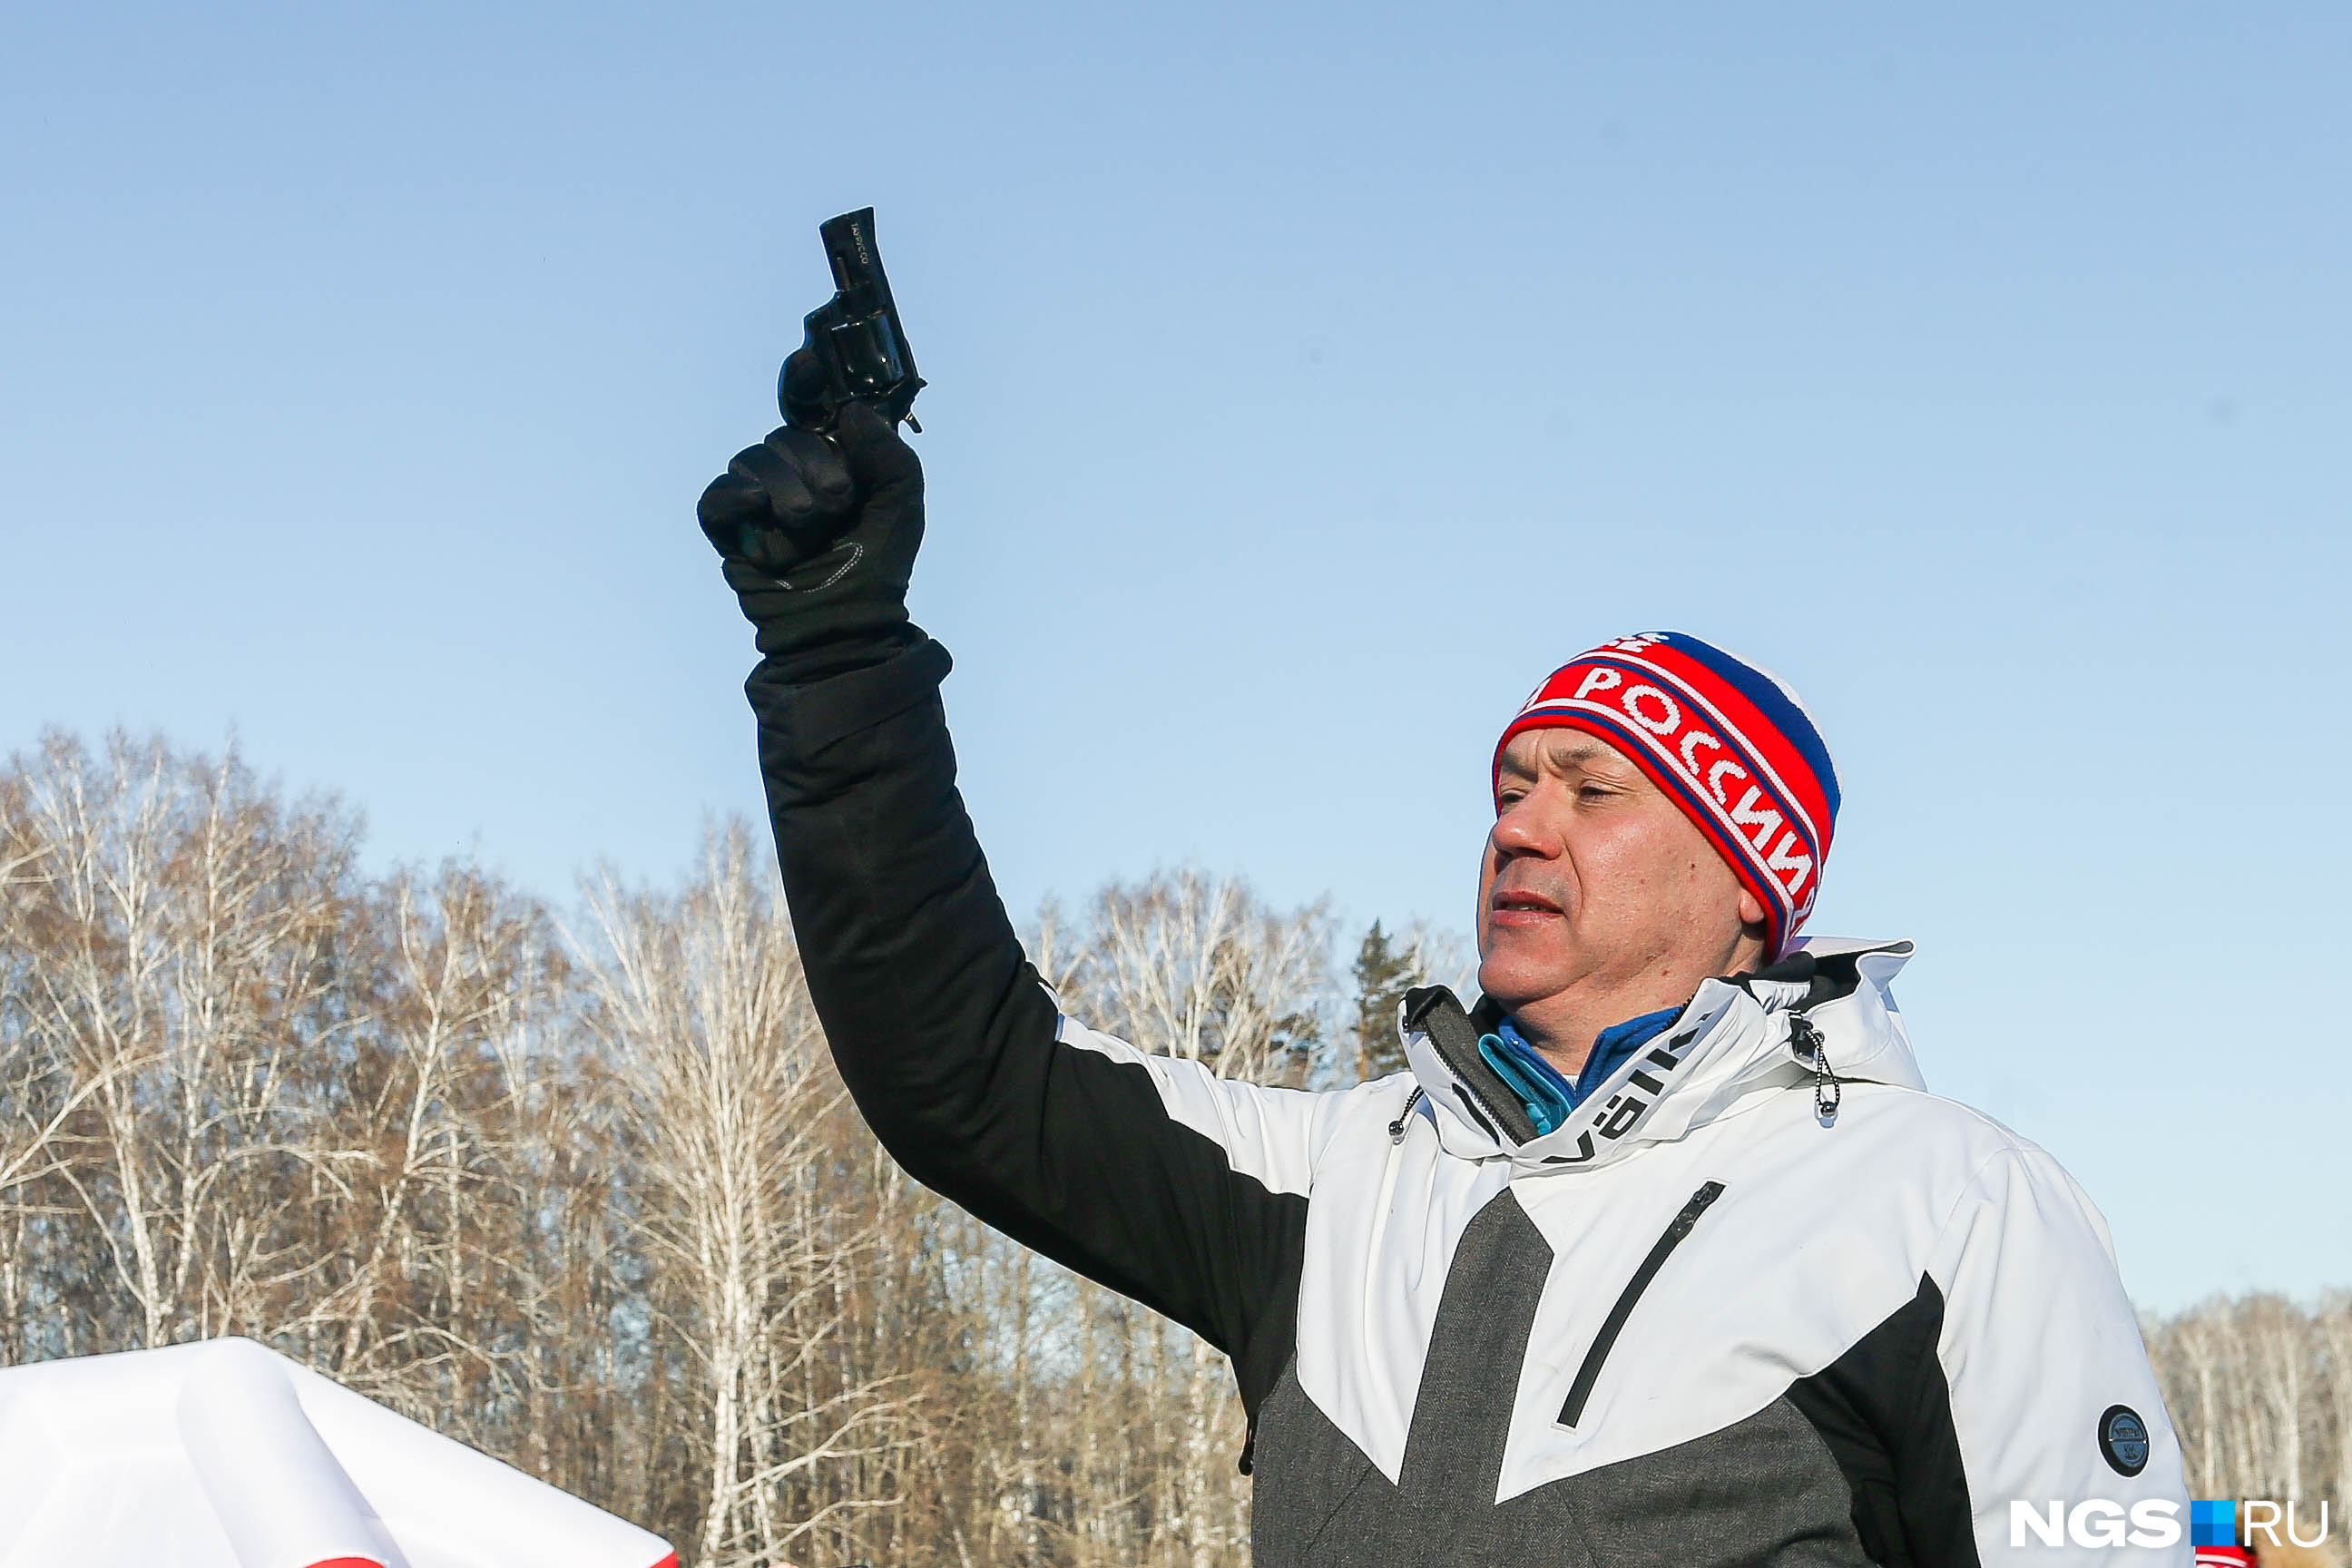 Намылили лыжи: как прошла одна из крупнейших зимних гонок в Новосибирске — 10 кадров